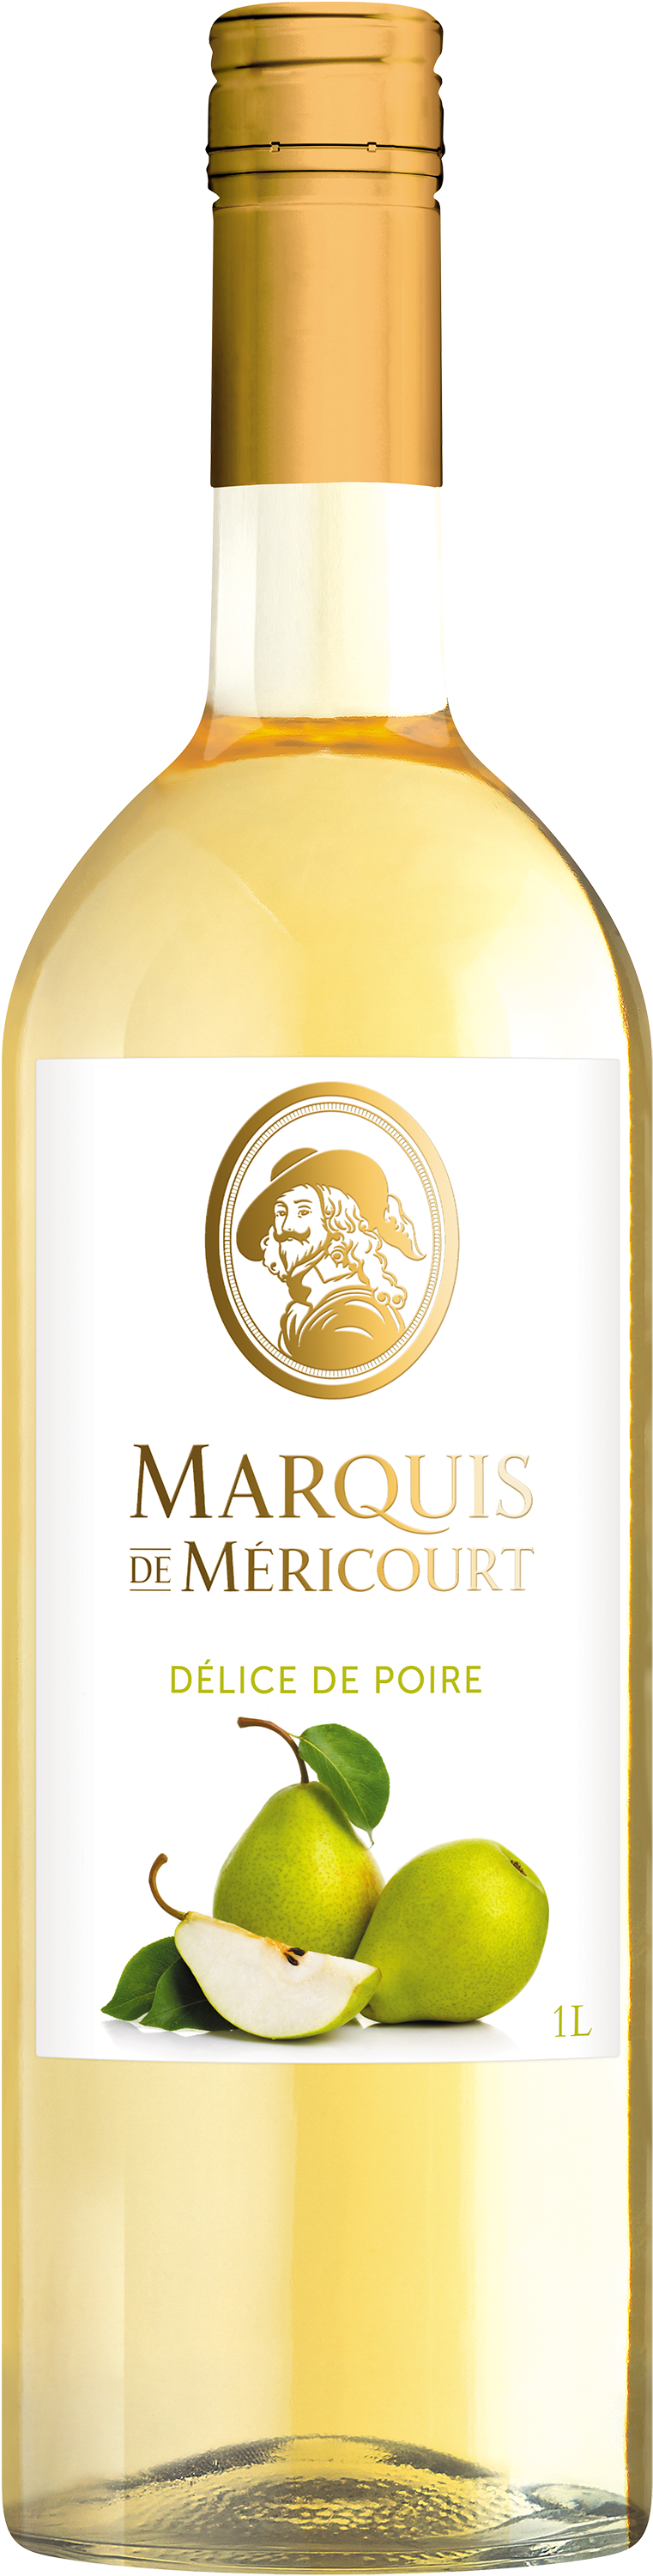 Marquis de Méricourt Délice de poire